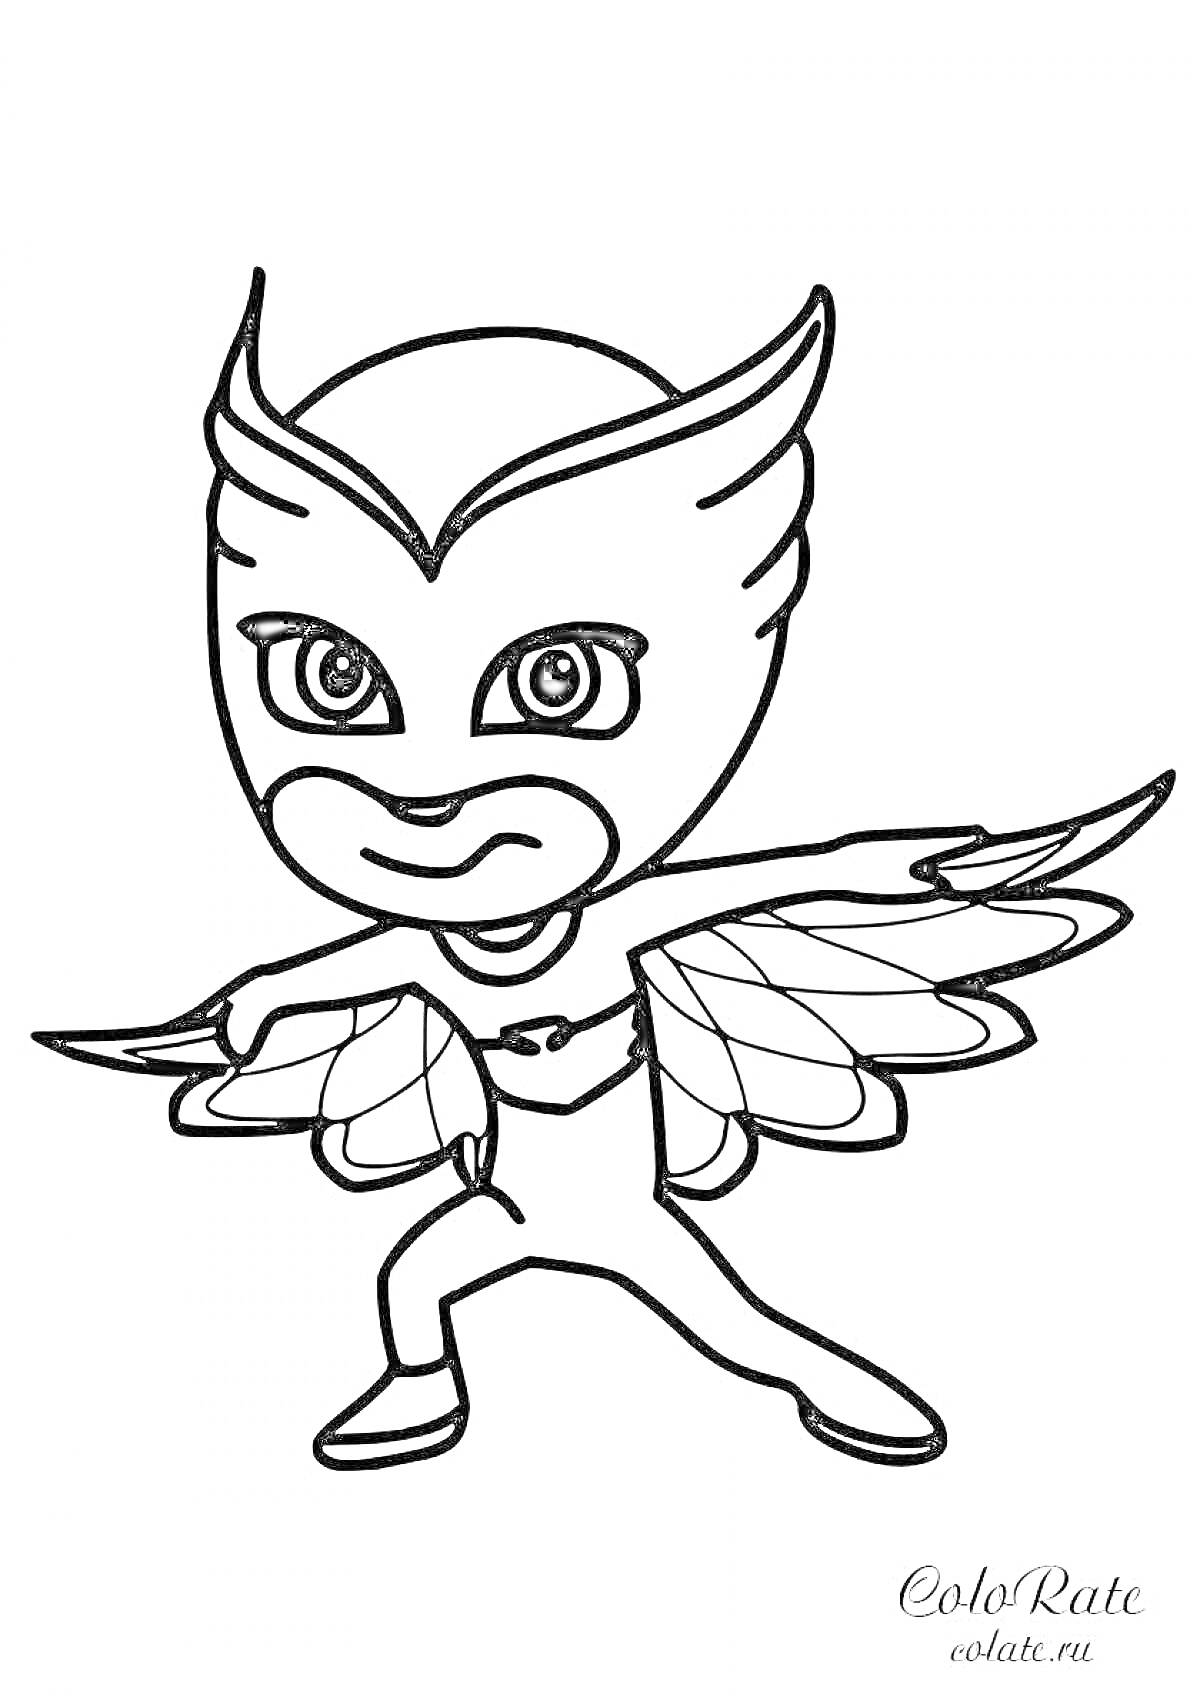 Супергерой в маске с крыльями, в боевой позе